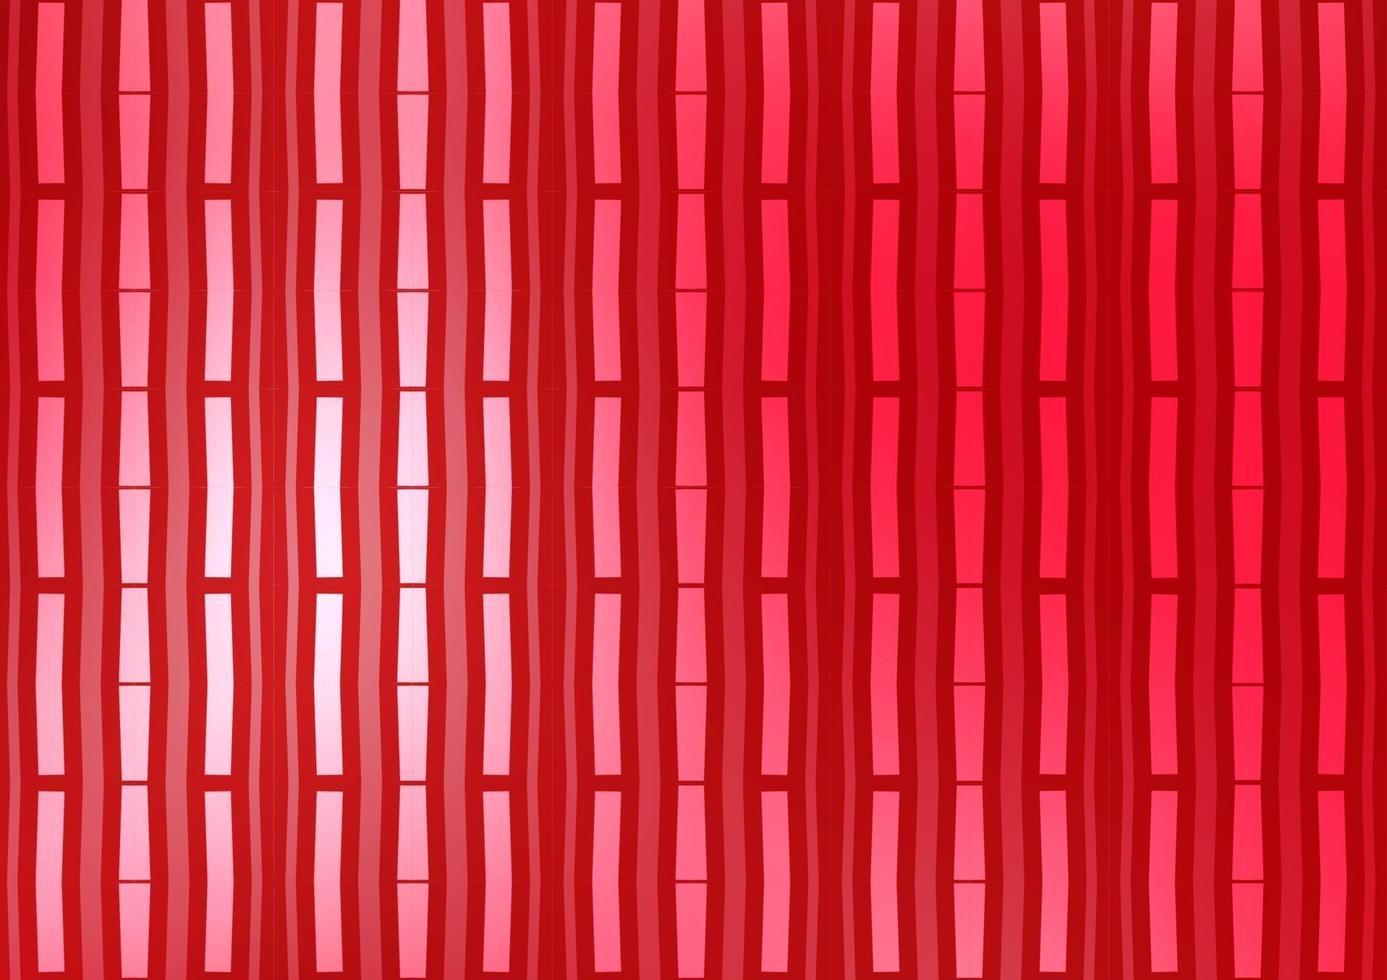 modelo de vetor vermelho claro com varas repetidas.